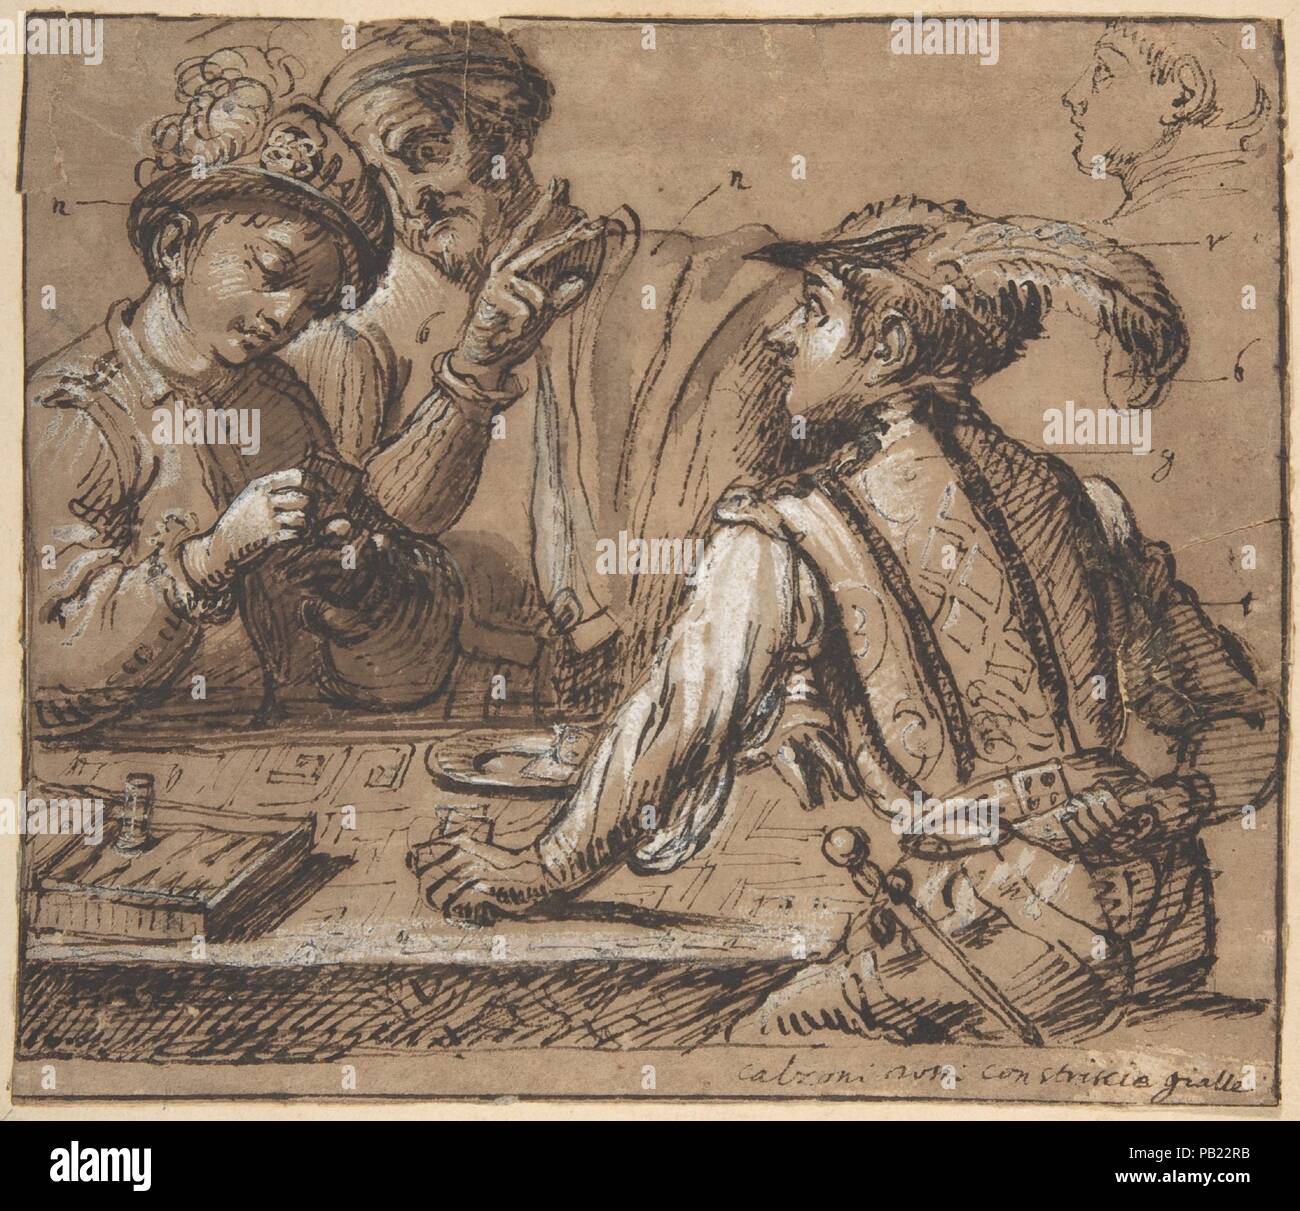 Studie nach Caravaggios "Cardsharps' mit Farbe fest. Artist: Anonyme, Italienisch; nach Caravaggio (Michelangelo Merisi) (Italienisch, Mailand oder Caravaggio 1571-1610 Porto Ercole). Maße: Blatt: 5 7/8 x 6 7/8 in. (15 x 17,5 cm). Datum: 1600-1700. Dies kraftvoll gerenderte Szene von Cardsharps durch ein Spiel Tabelle basiert auf einer Zusammensetzung von Caravaggio der gleichen Thema (Kimbell Art Museum, Fort Worth), ca. 1595-1600 gemalt, aber ist keine exakte Reprise des Gemäldes. Das Blatt enthält in der oberen rechten ein separates, Übersicht Skizze der Leiter den gleichen jungen Mann, der durch die Tabelle sitzt an Stockfoto